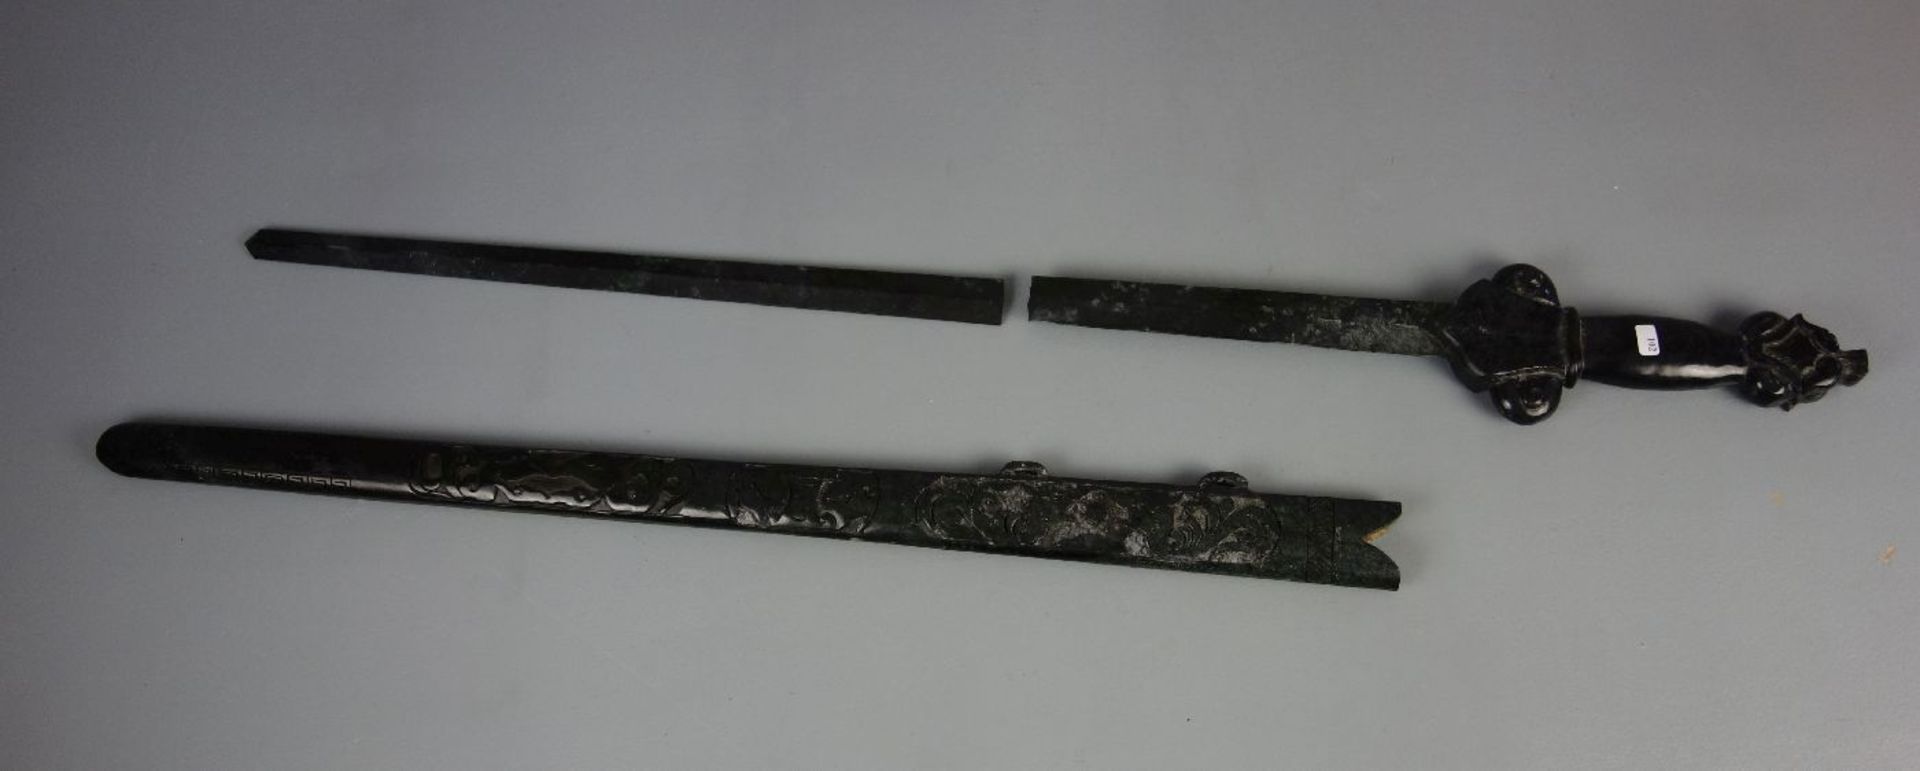 JADESCHWERT / jade sword, China. Stilisiertes Schwert aus einem Stück Jade gearbeitet mit - Image 2 of 5